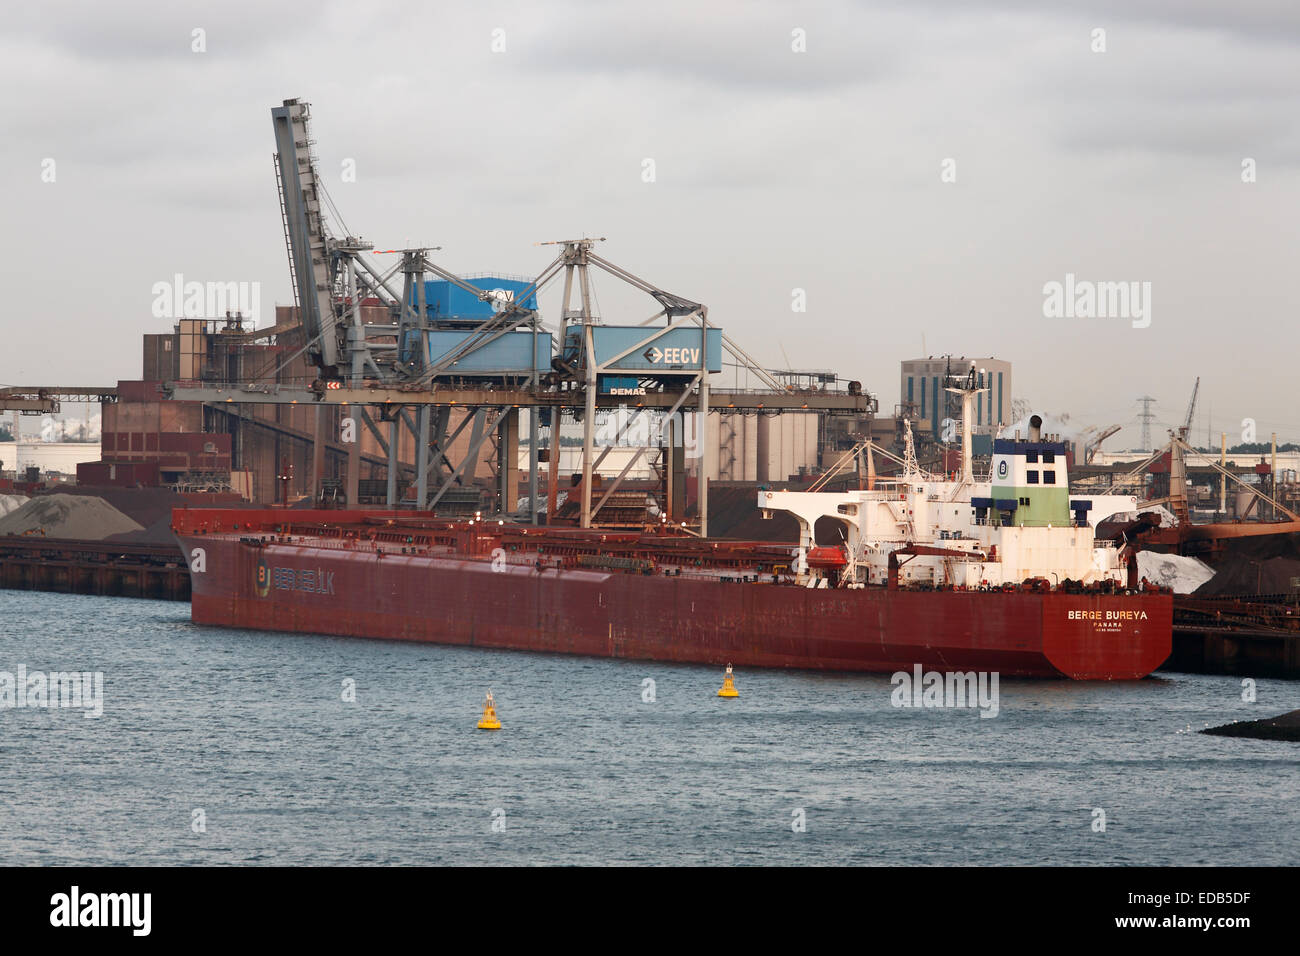 Frachter Berge Bureya (Bergebulk) Panama laden Roherz im Industriehafen in Rotterdam, Niederlande Stockfoto